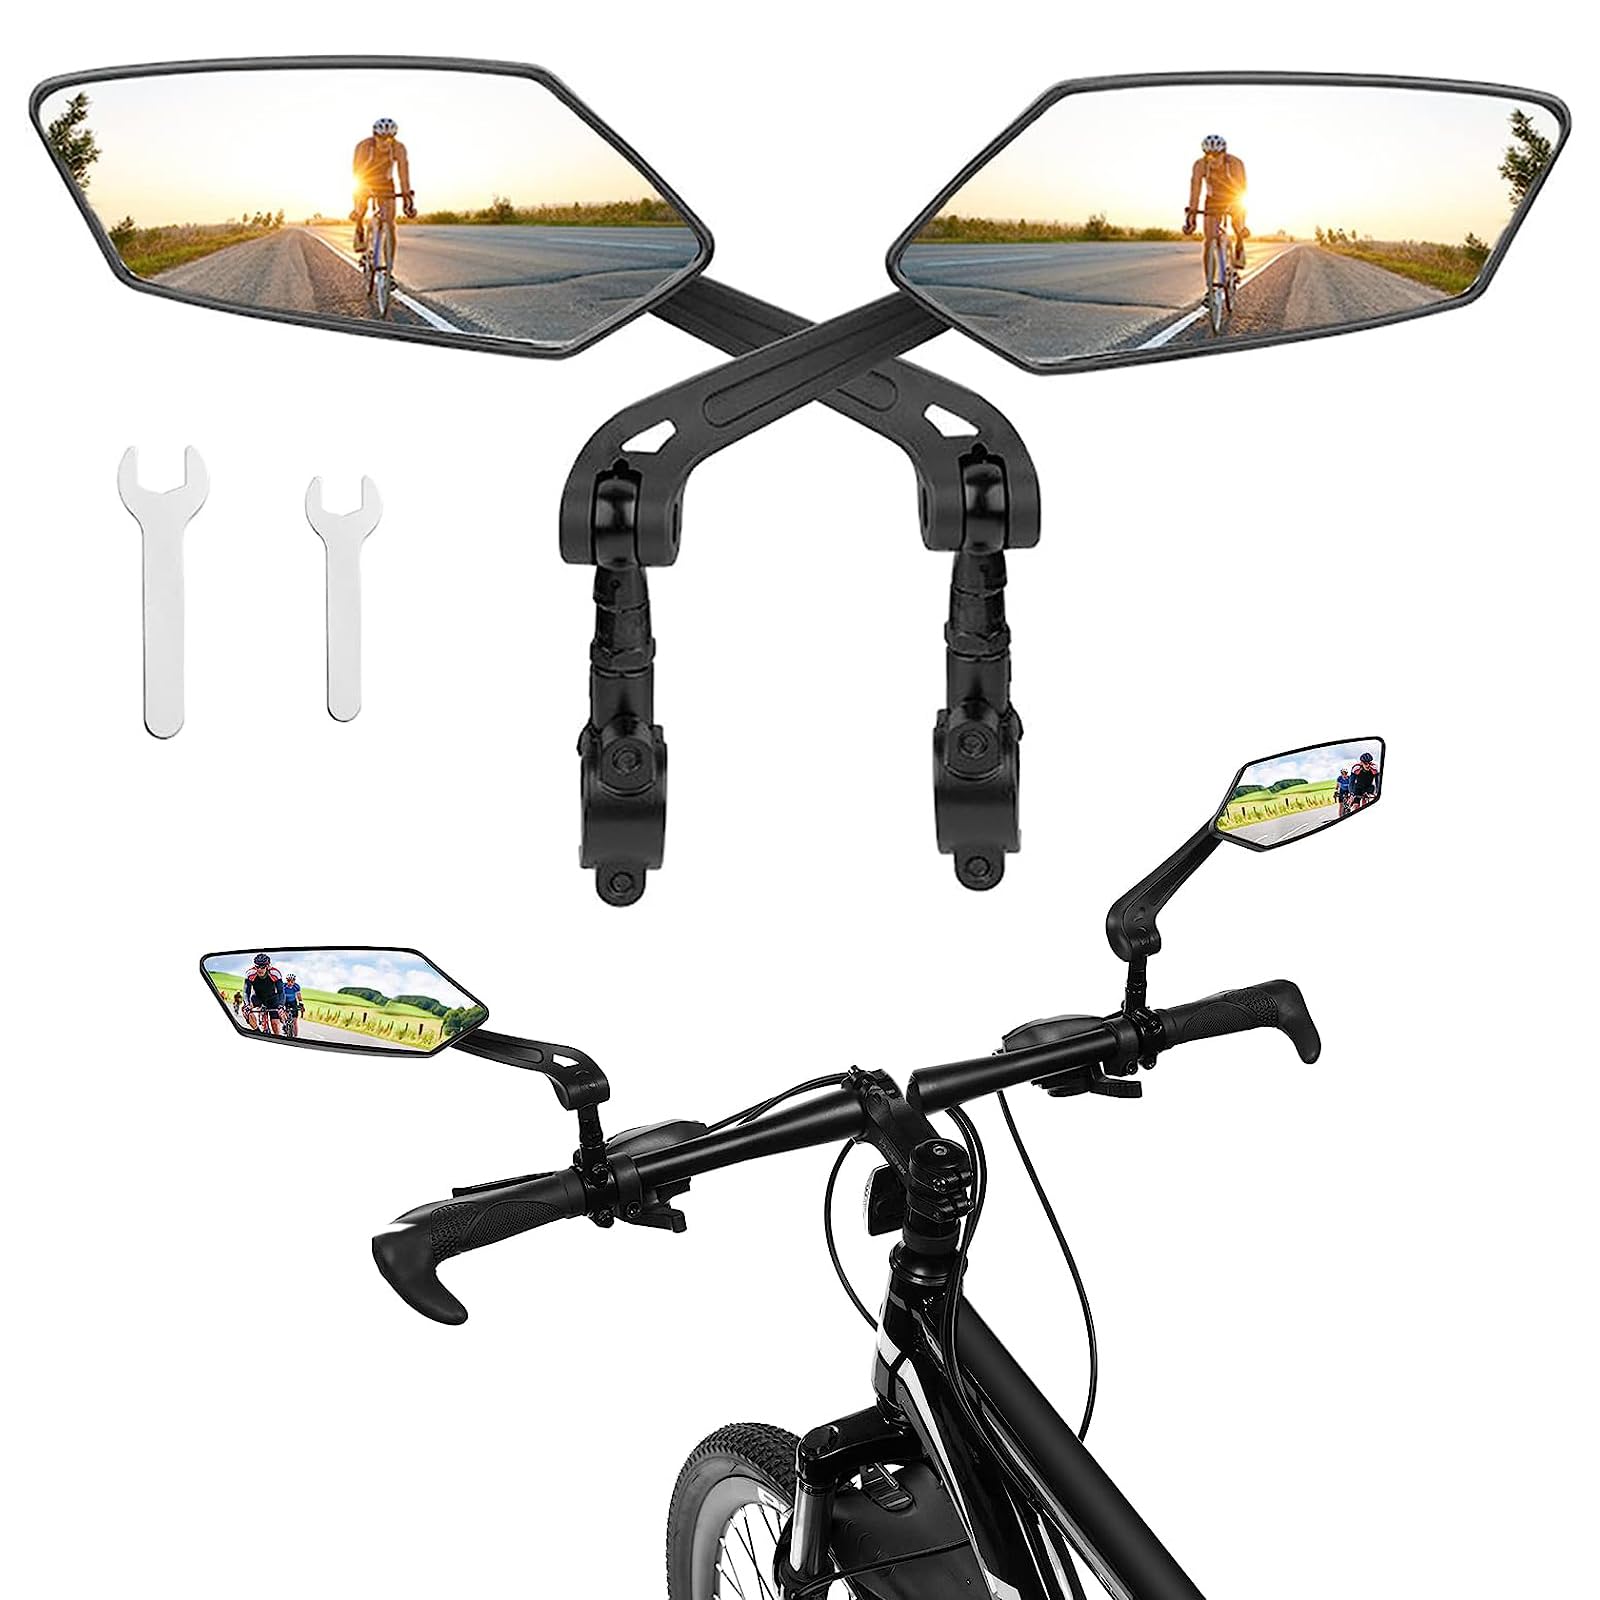 Großer Klappbar Spiegel für Lenker, 2 Stück Rückspiegel Fahrrad Spiegel Set, Schlagfestes Echtglas, Fahrrad Rückspiegel für E-Bike, Fahrradspiegel für Lenker Ebike Mountainbike MTB (Links + Rechts) von Bssowe